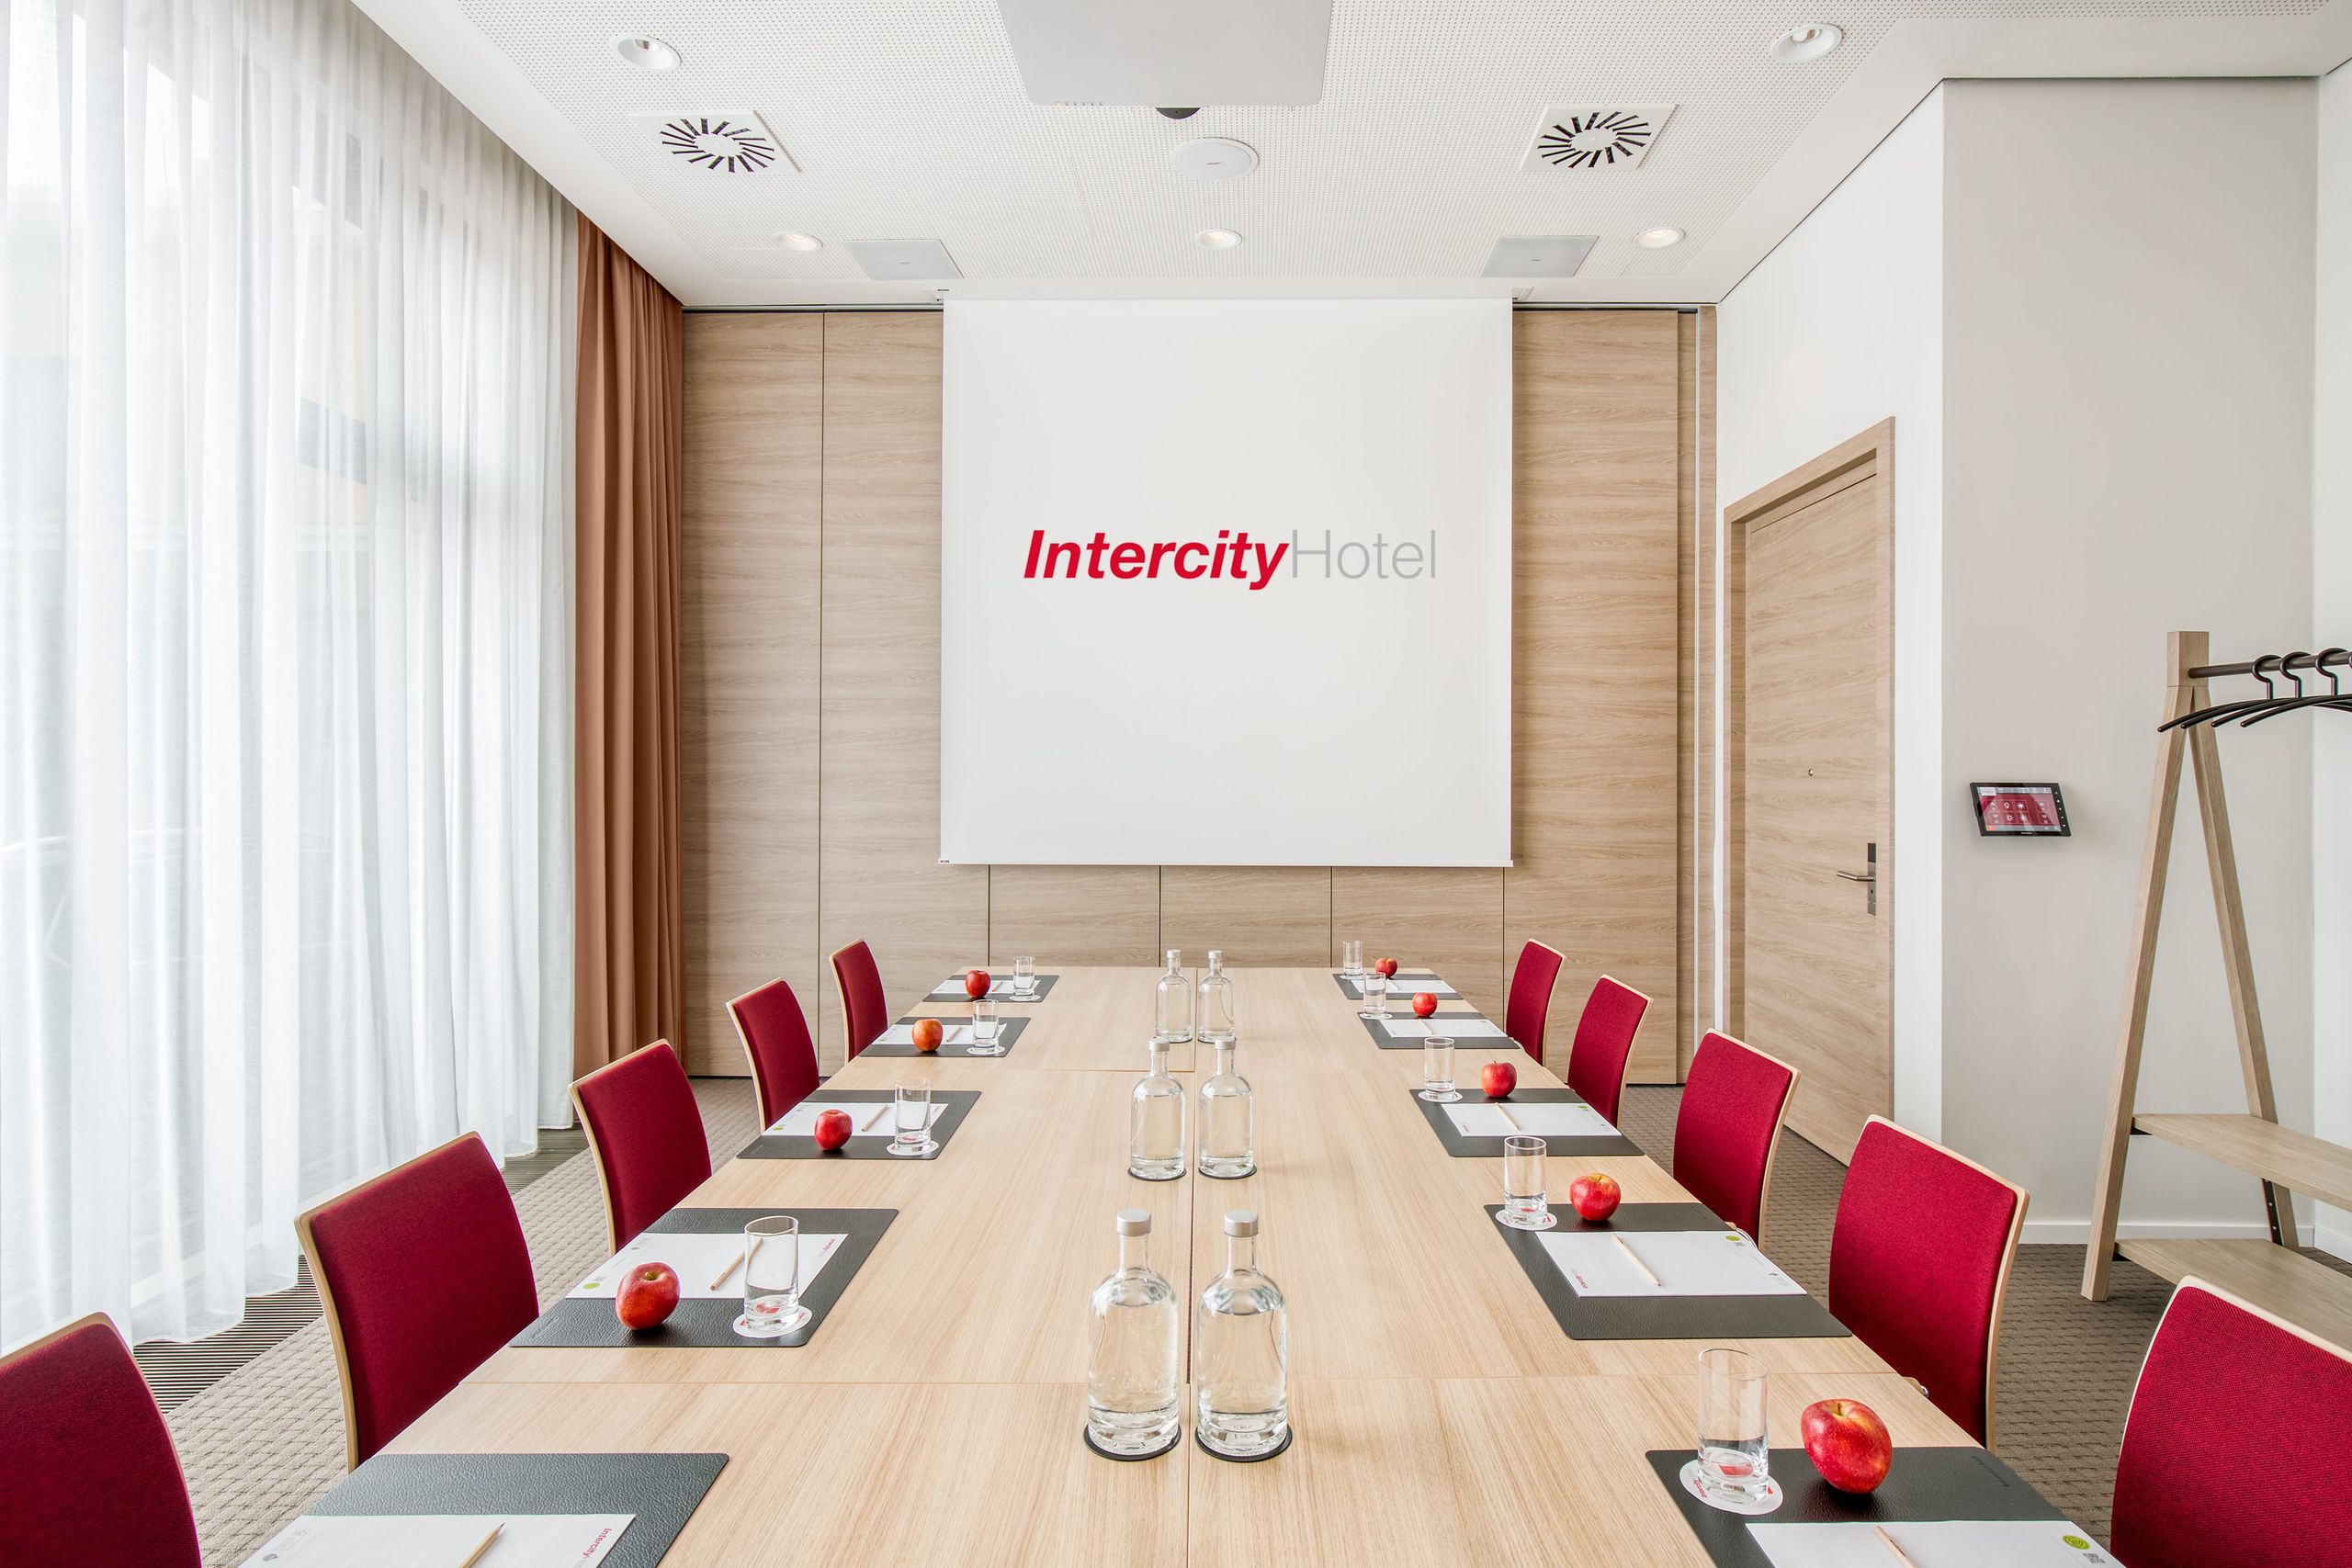 IntercityHotel Hildesheim - Vergaderingen - Incentives - Conferentieruimtes - Evenementen